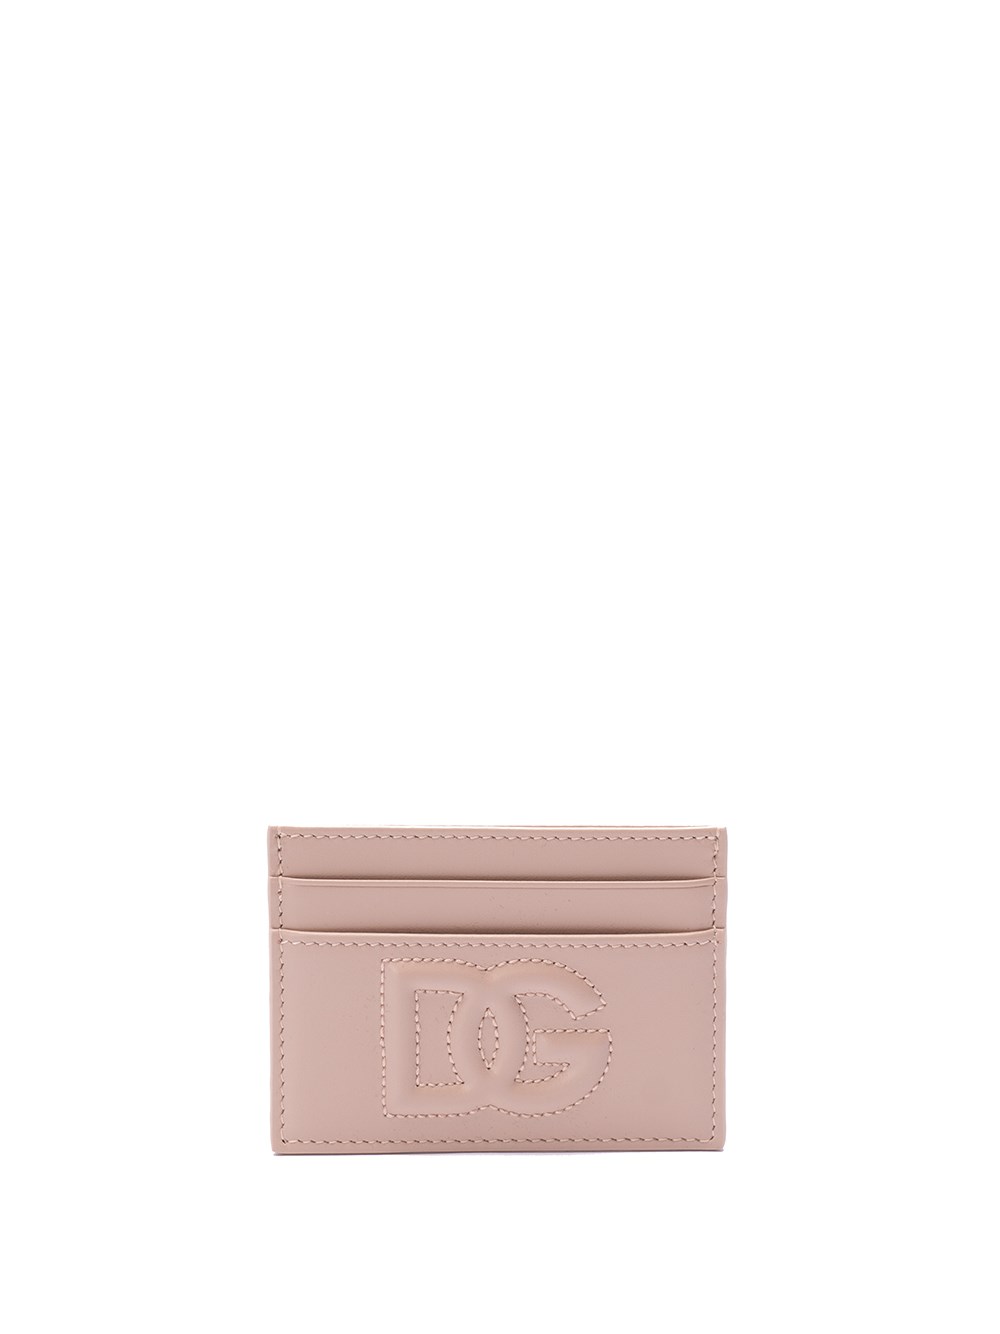 Dolce & Gabbana `dg` Logo Card Holder In Beige